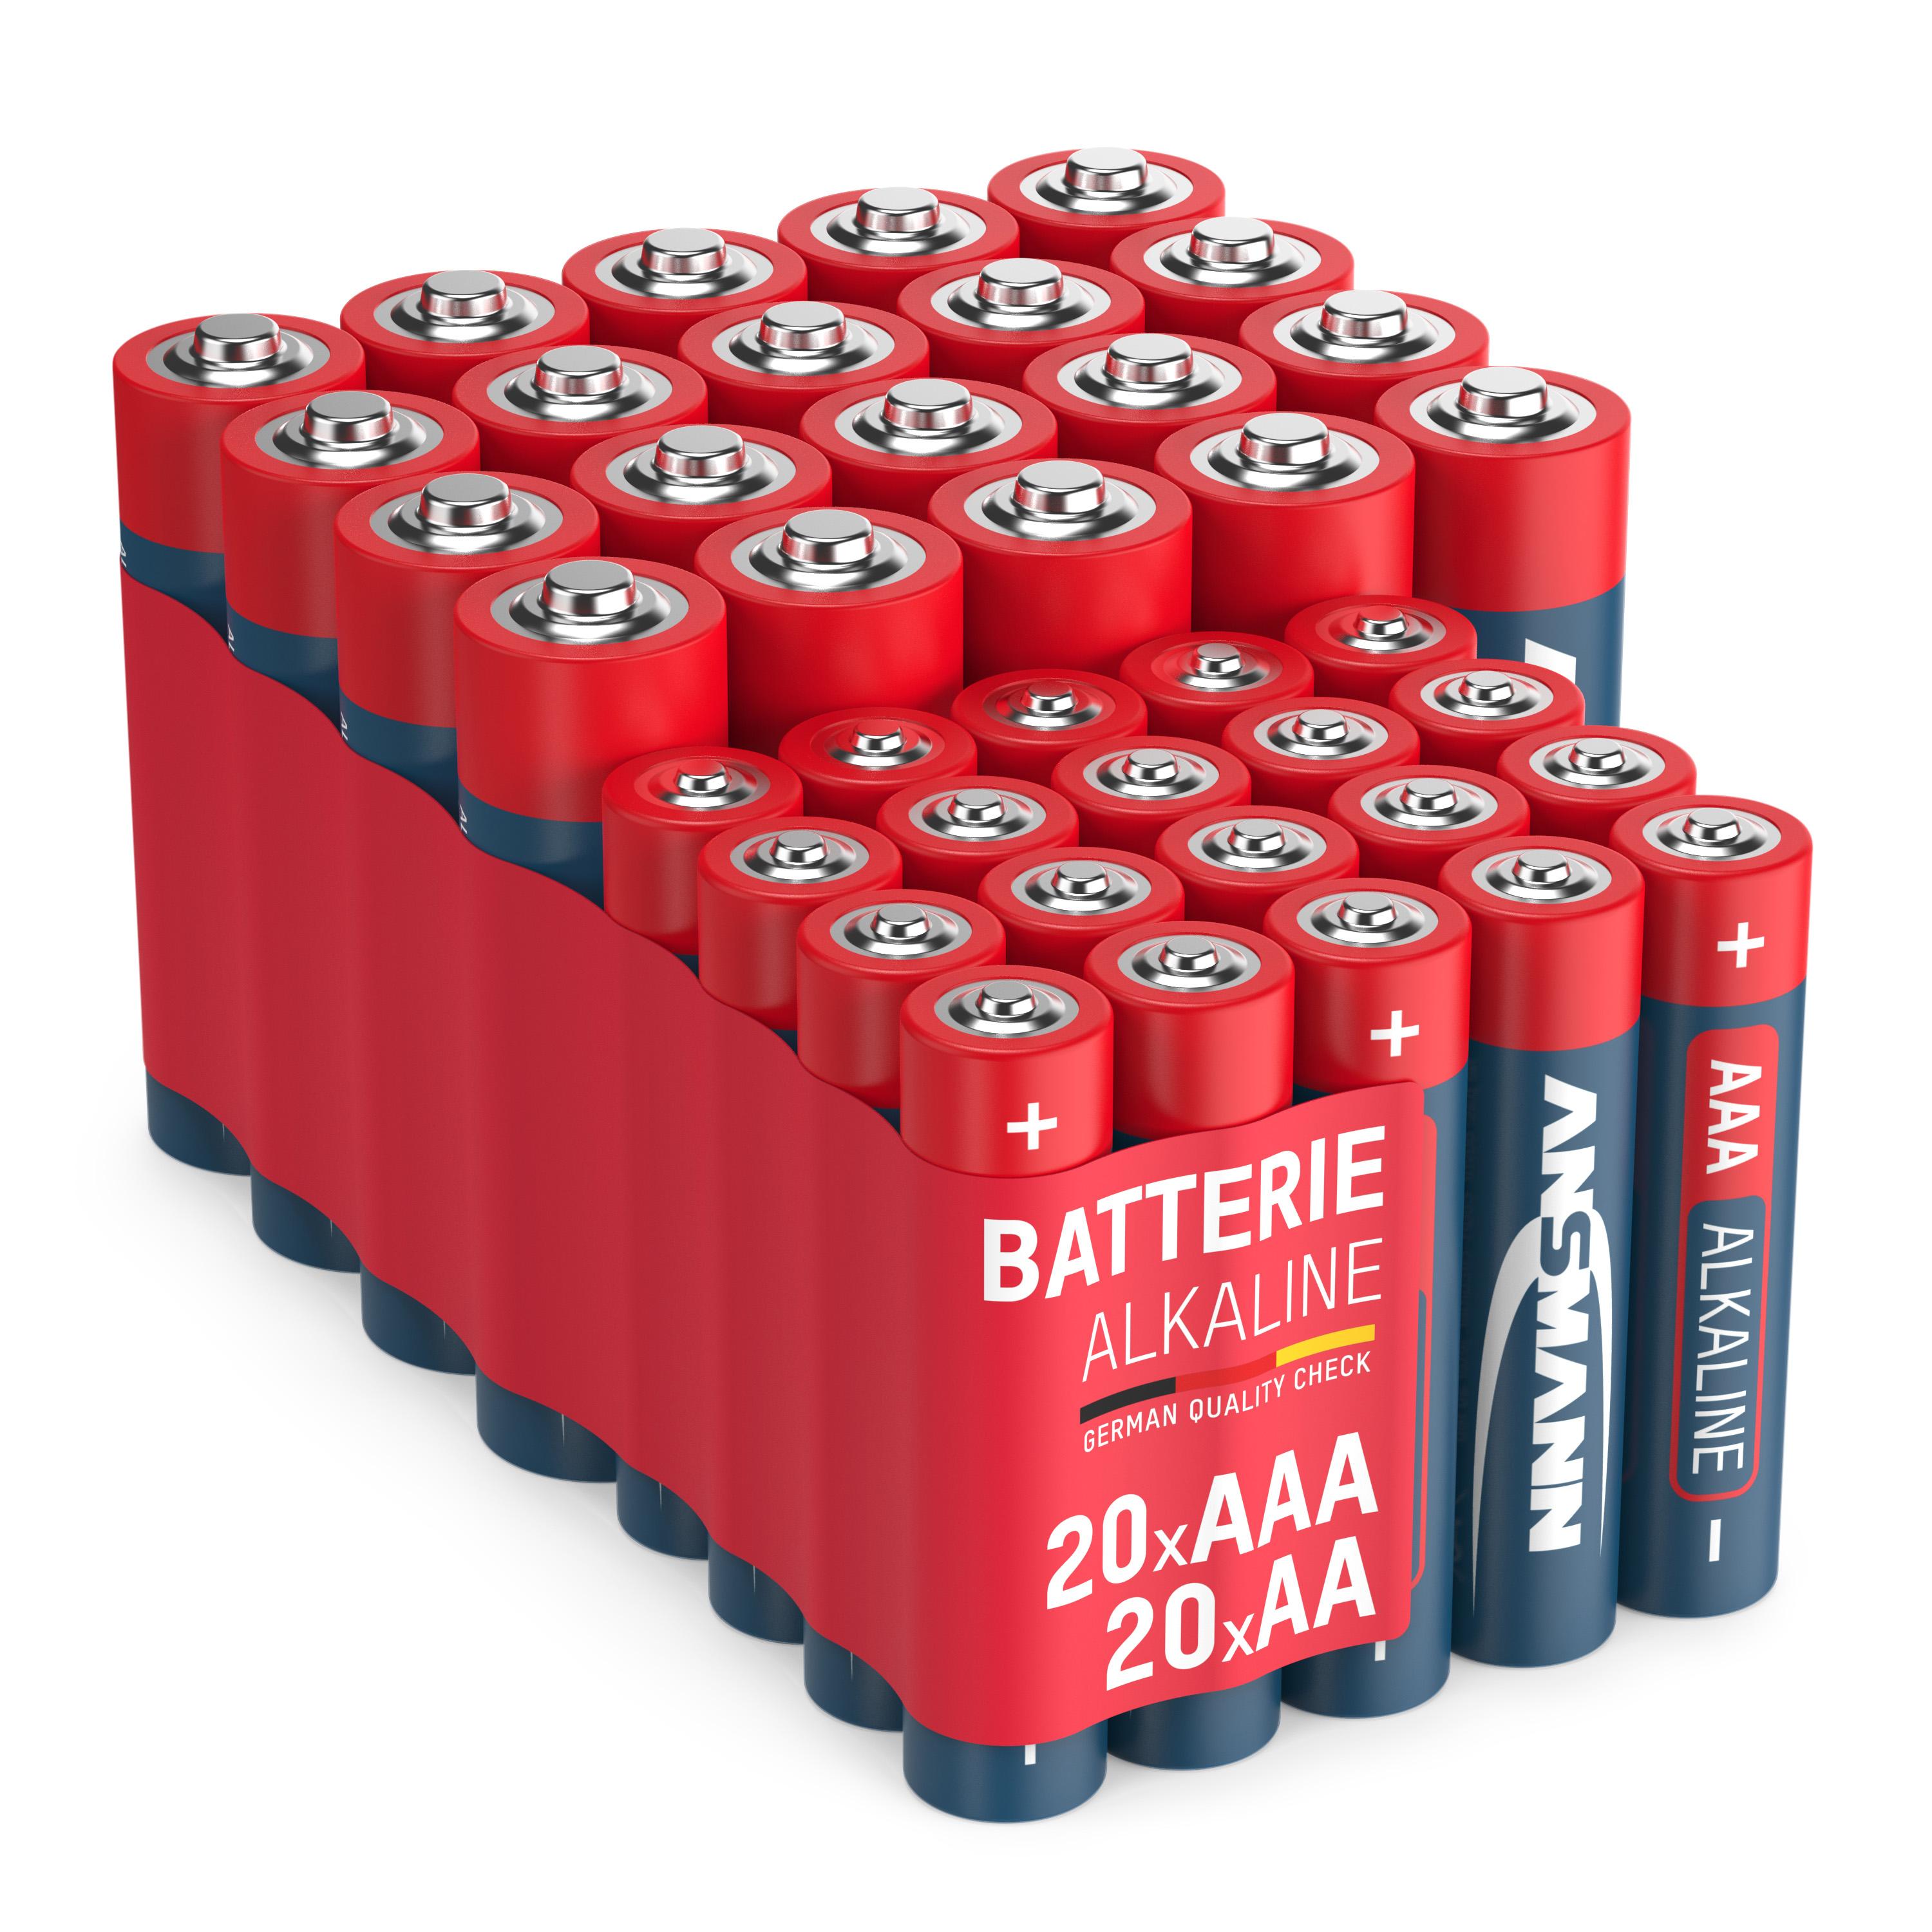 NiMH Micro AA ANSMANN 20x 1.5 Alkaline Sparpack 20x + Batterie, Volt LR6 AAA (Nickel-Metallhydrid), Mignon AA LR03 Mignon